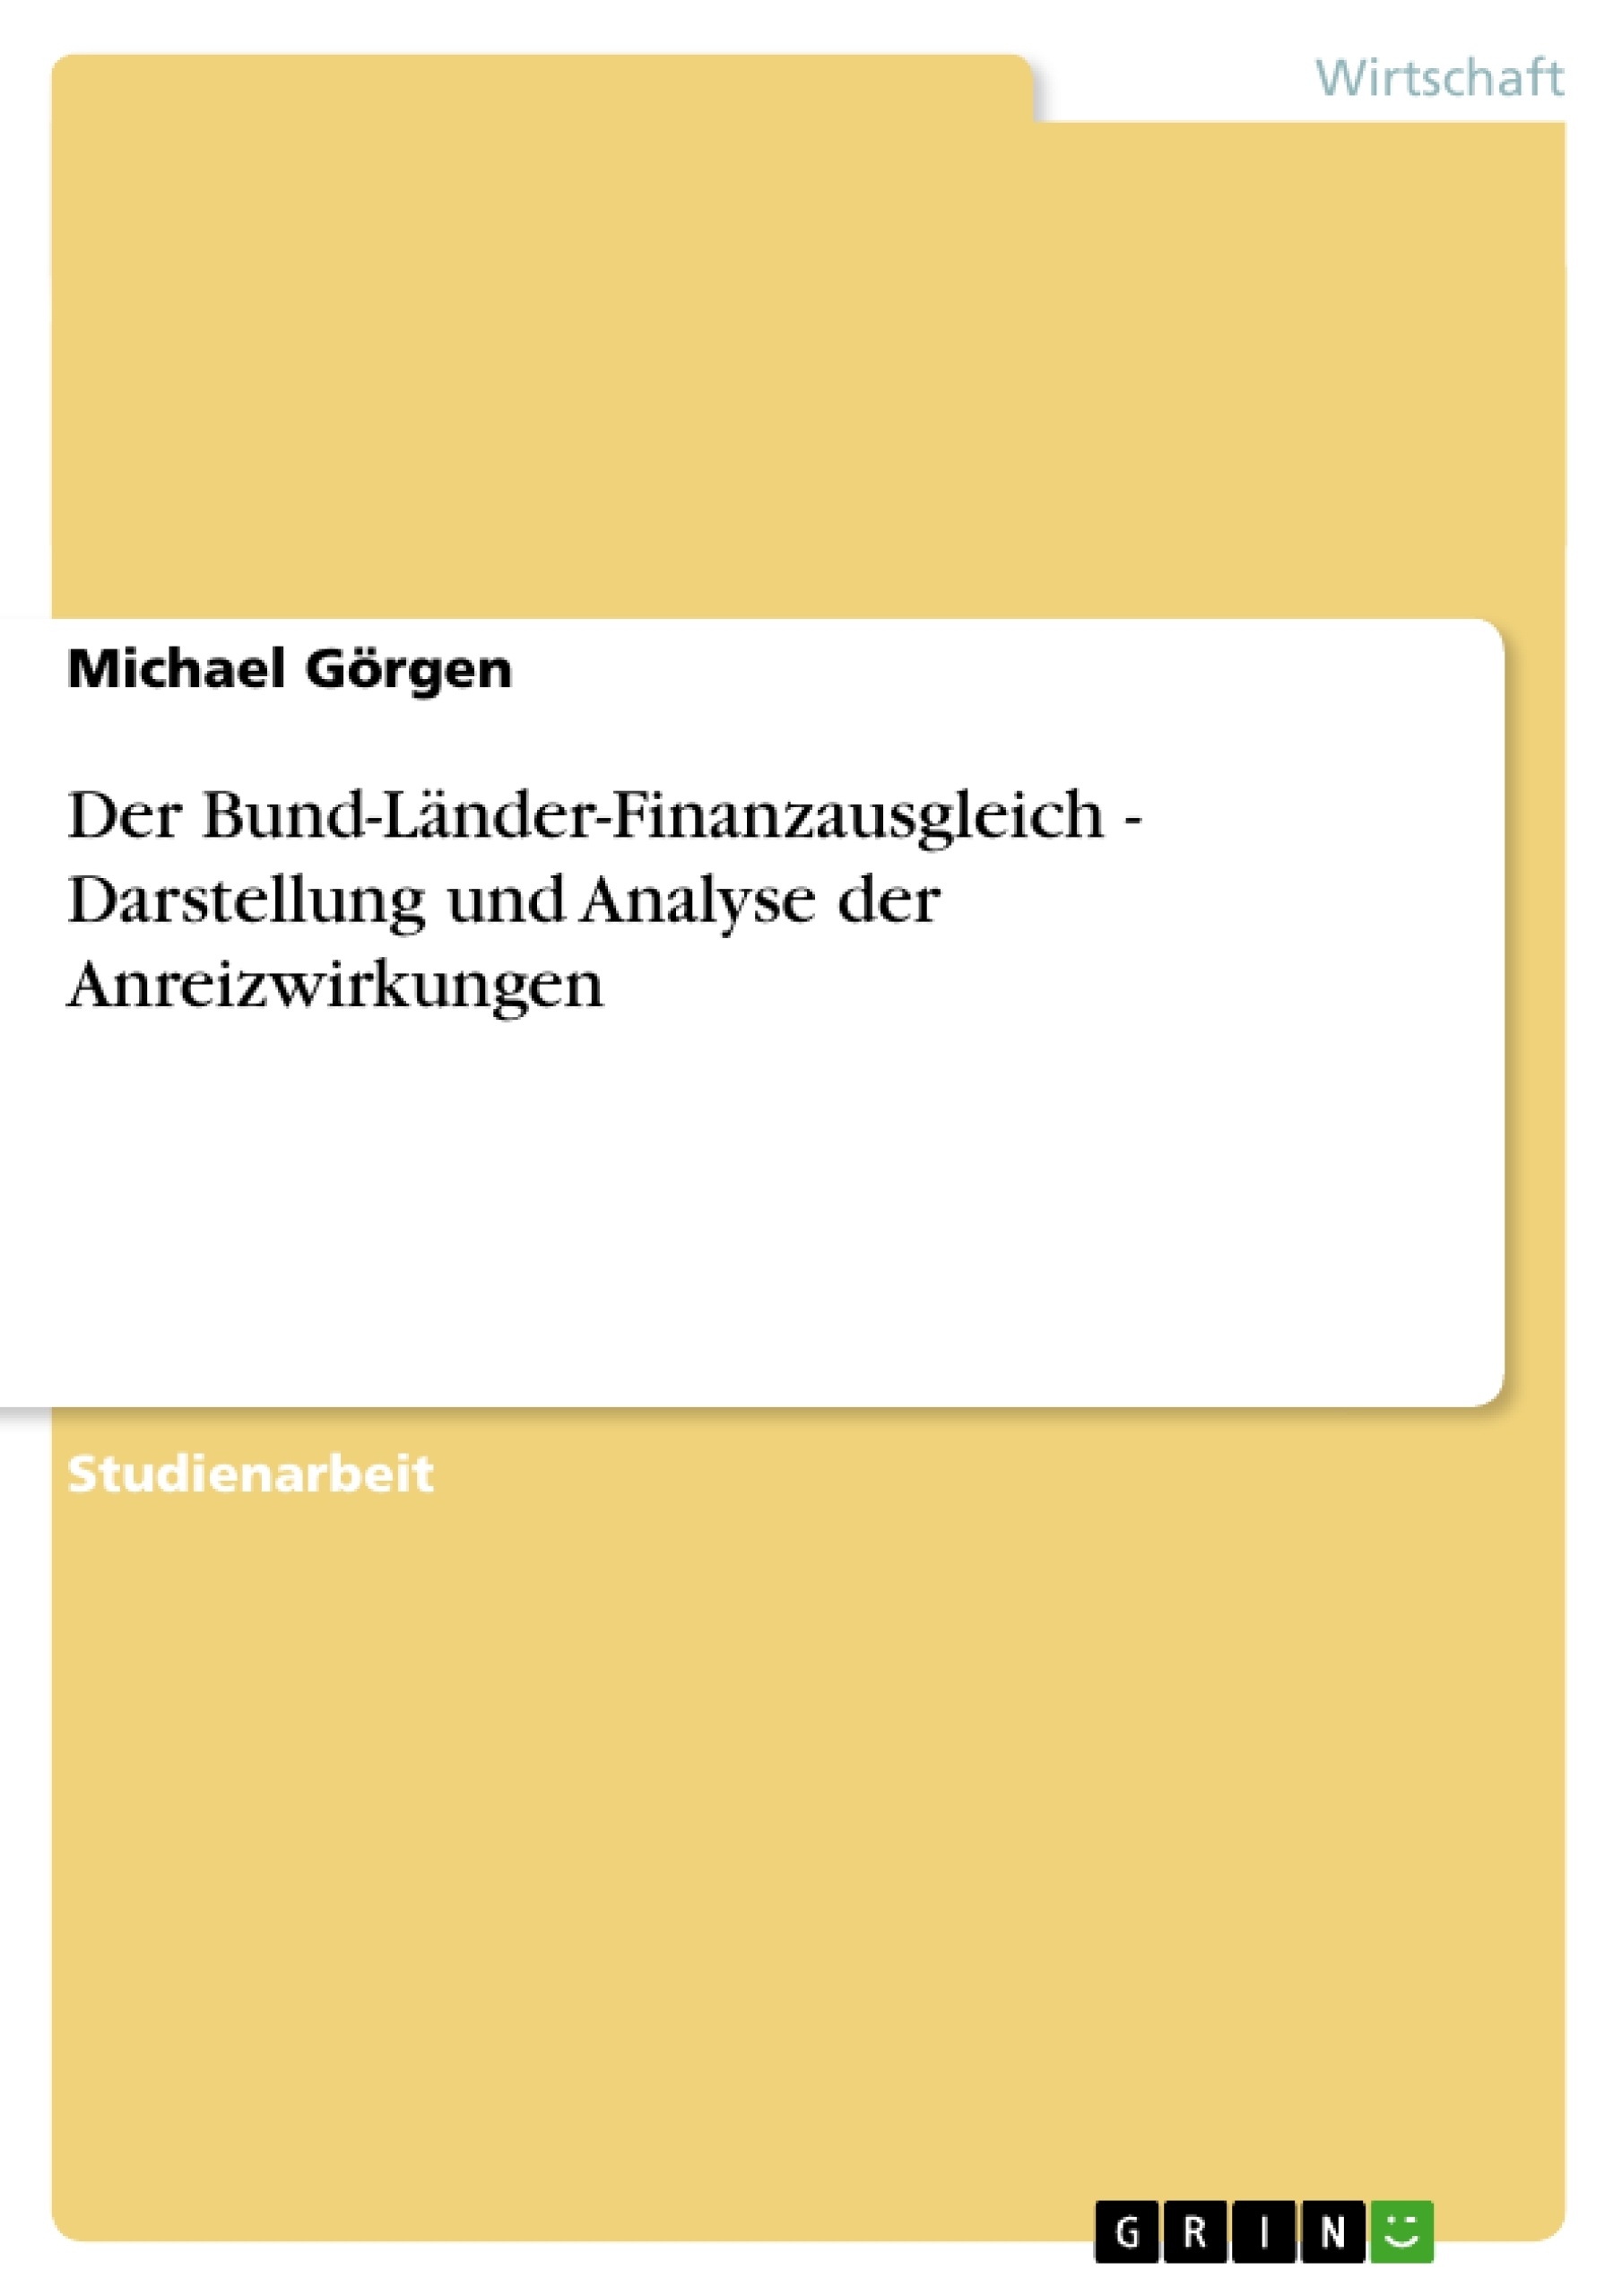 Título: Der Bund-Länder-Finanzausgleich - Darstellung und Analyse der Anreizwirkungen